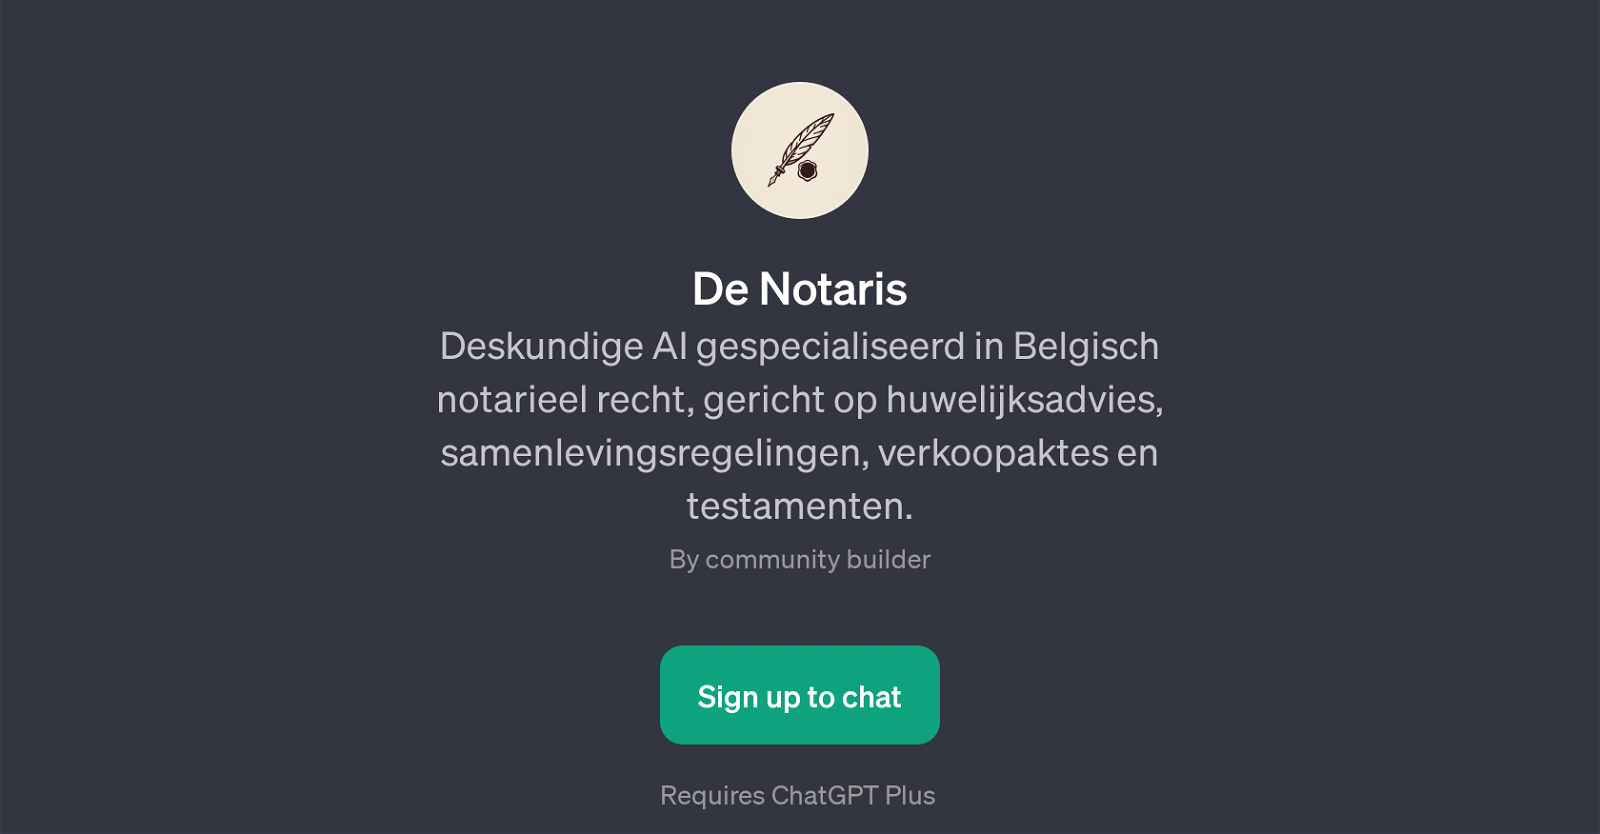 De Notaris website